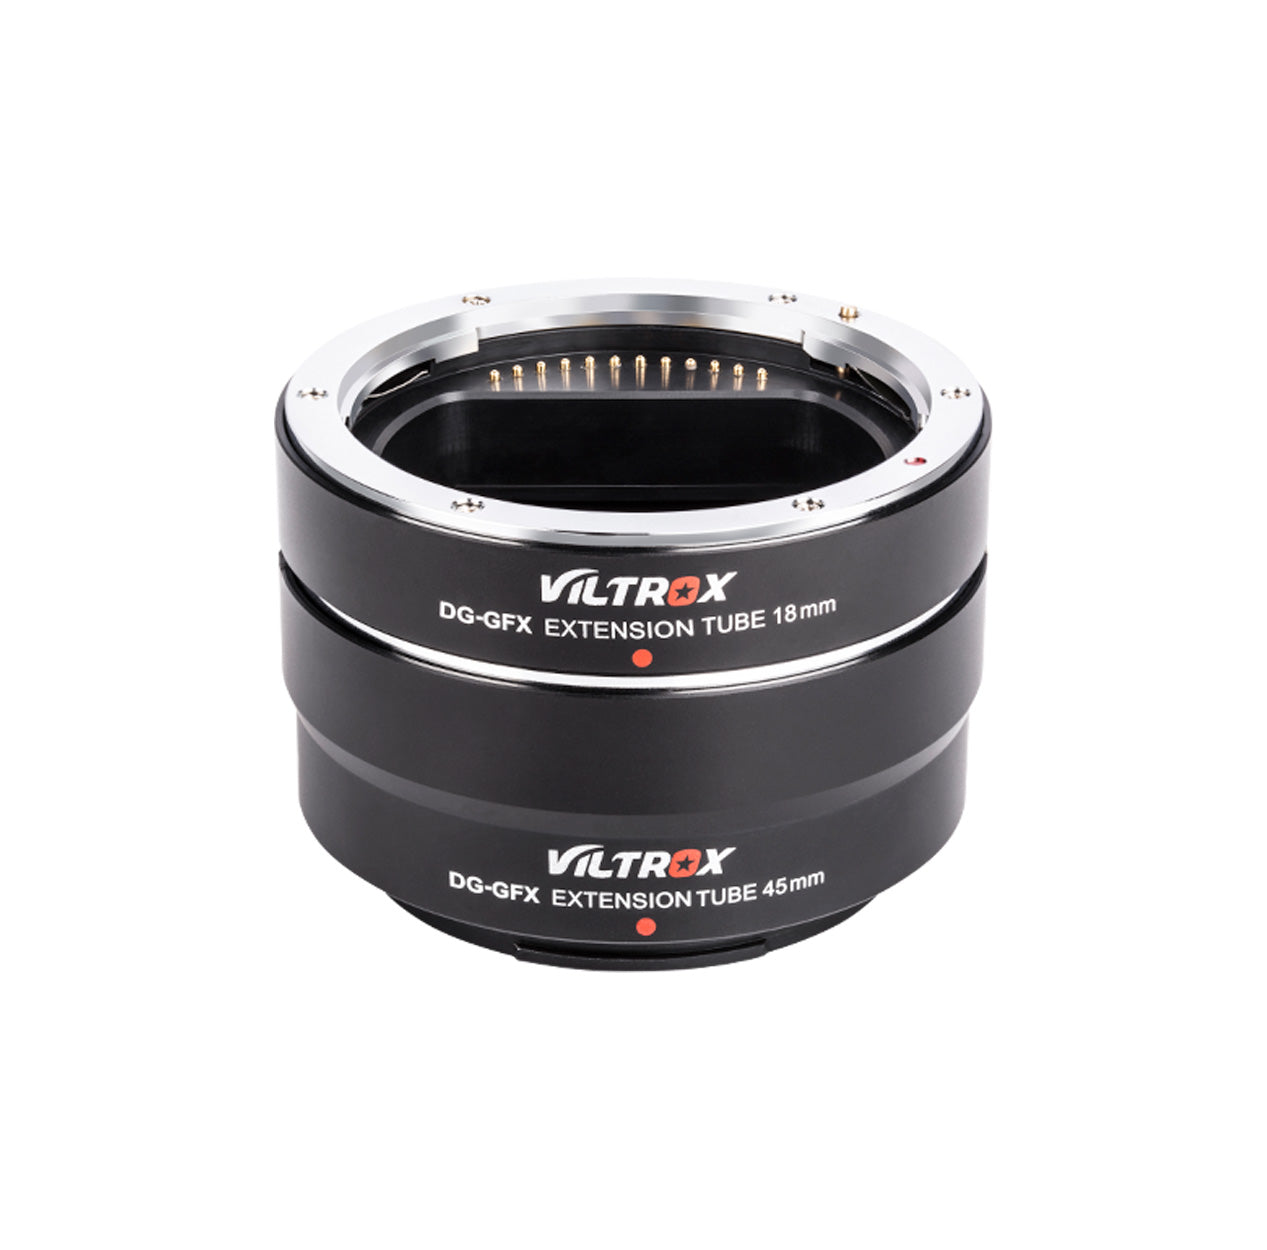 Viltrox DG-GFX 45mm Extension Tube for Fuji GFX-Mount med-Format Cameras FUJIFILM GFX50S/GFX50R